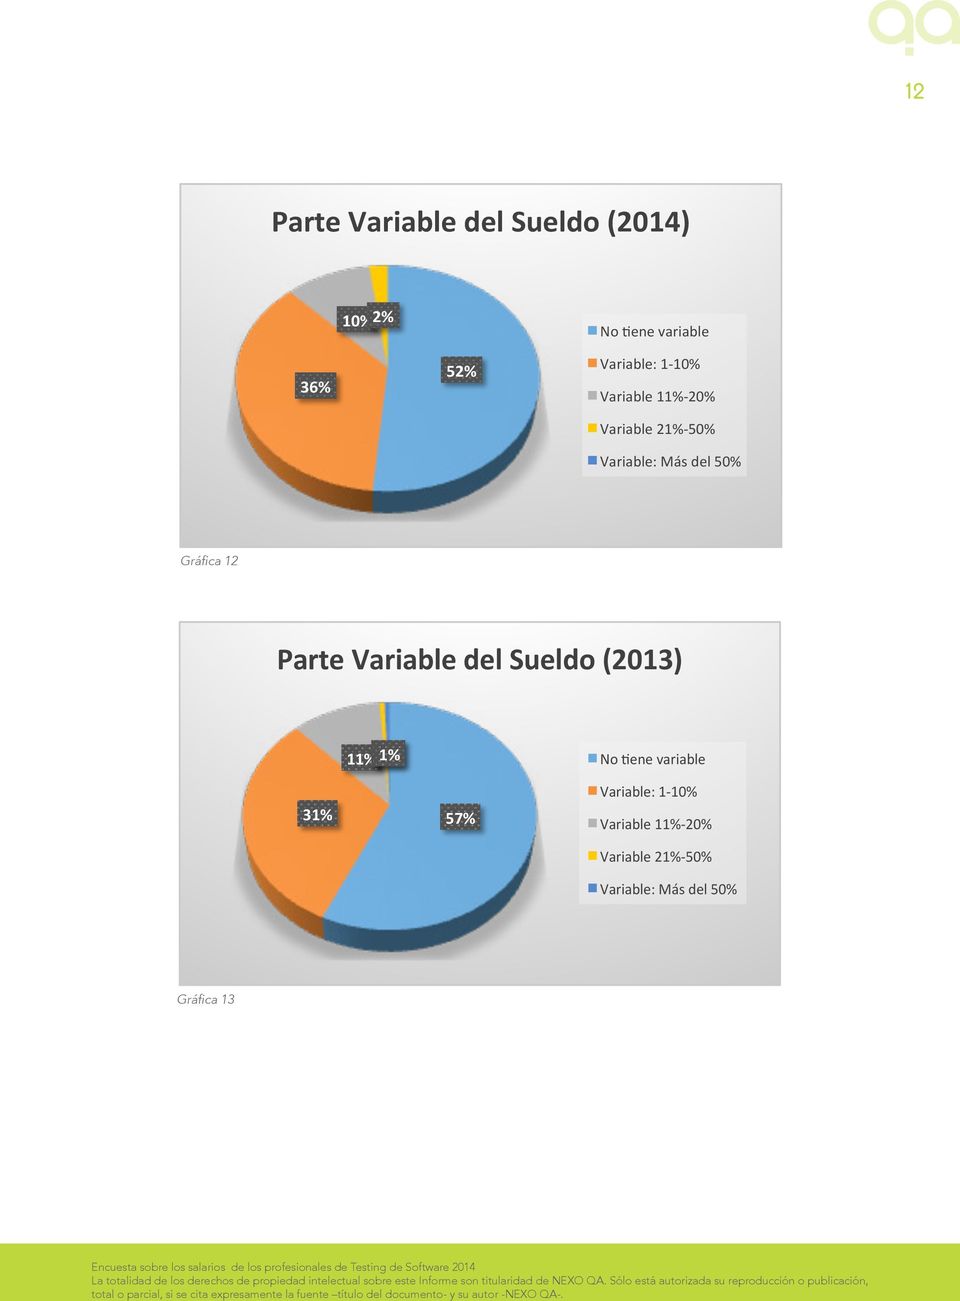 Gráfica 12 Parte Variable del Sueldo (2013) 11% 0% 1% No $ene variable 31%